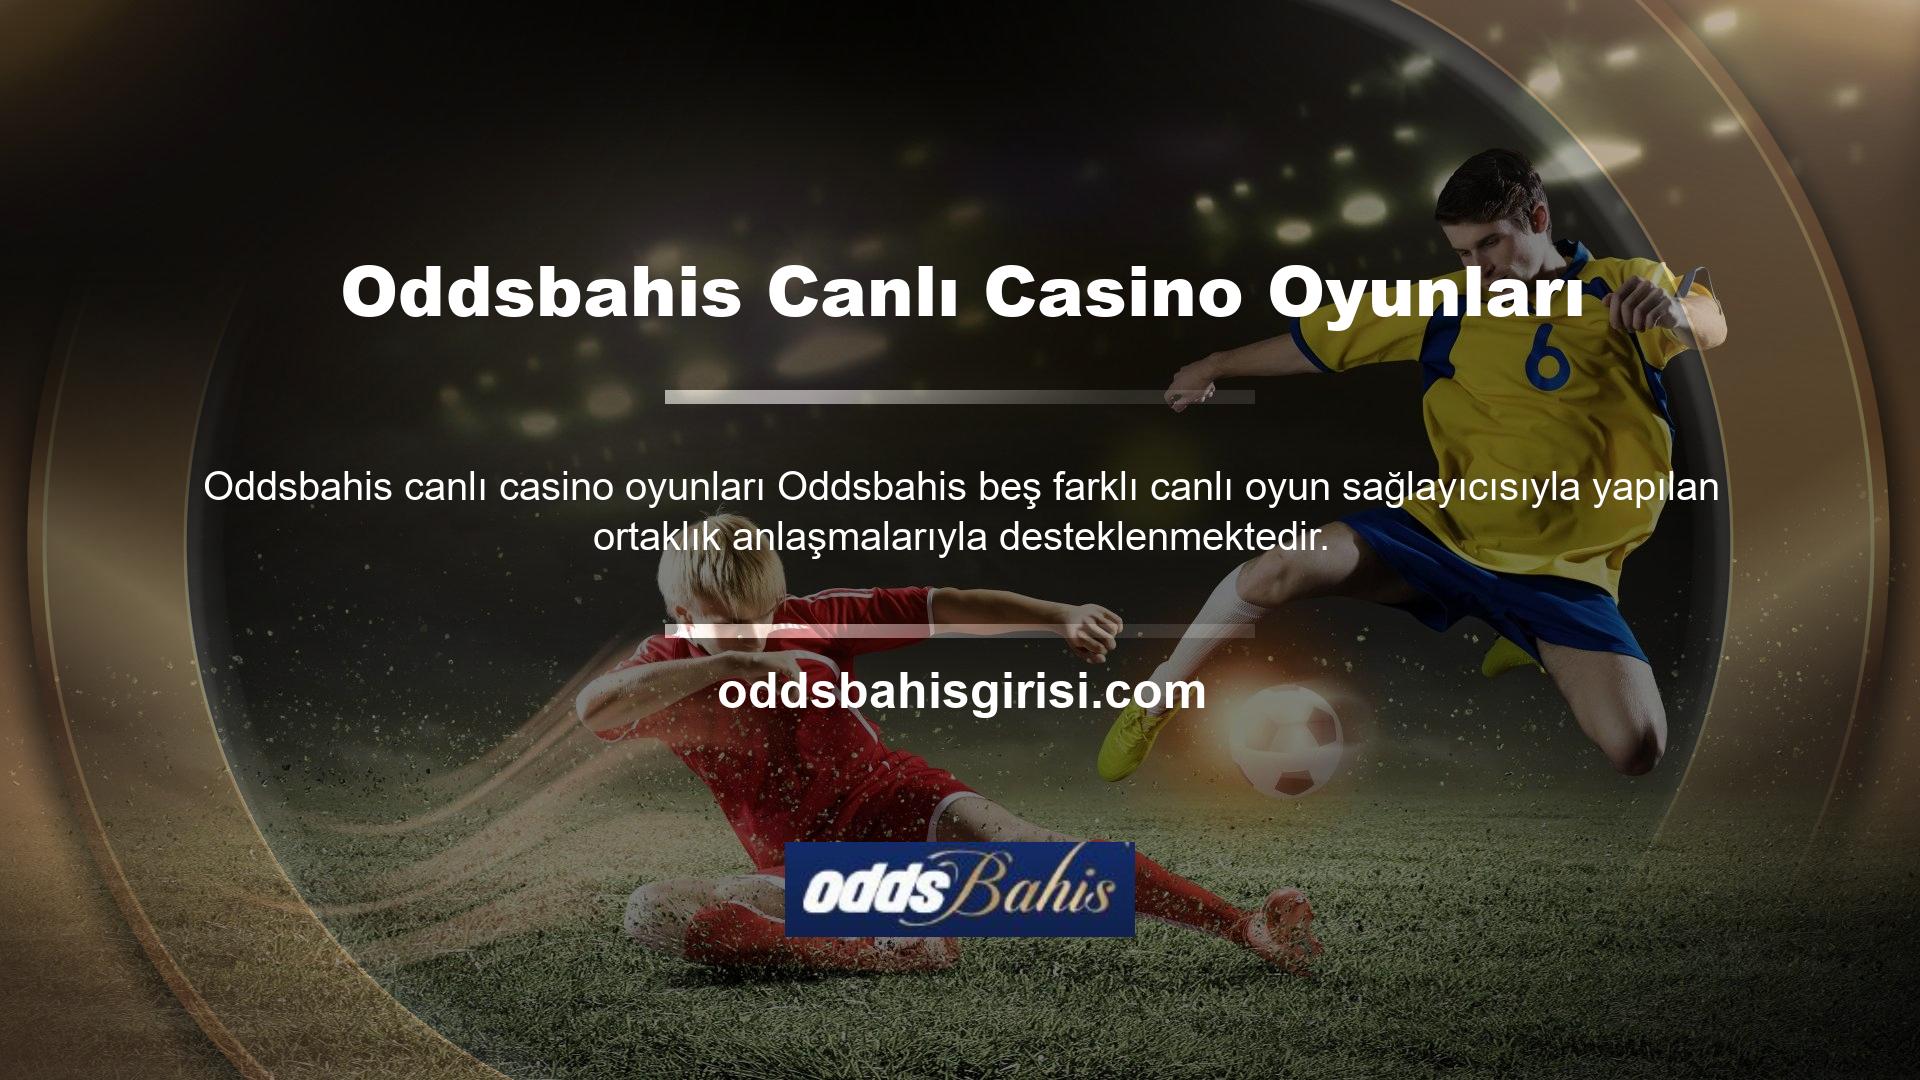 Zengin canlı casino içeriğinde Türk krupiyeler yer almakta ve bu oyunlar aracılığıyla Türkçe konuşan kullanıcı deneyimine katkıda bulunmaktadırlar